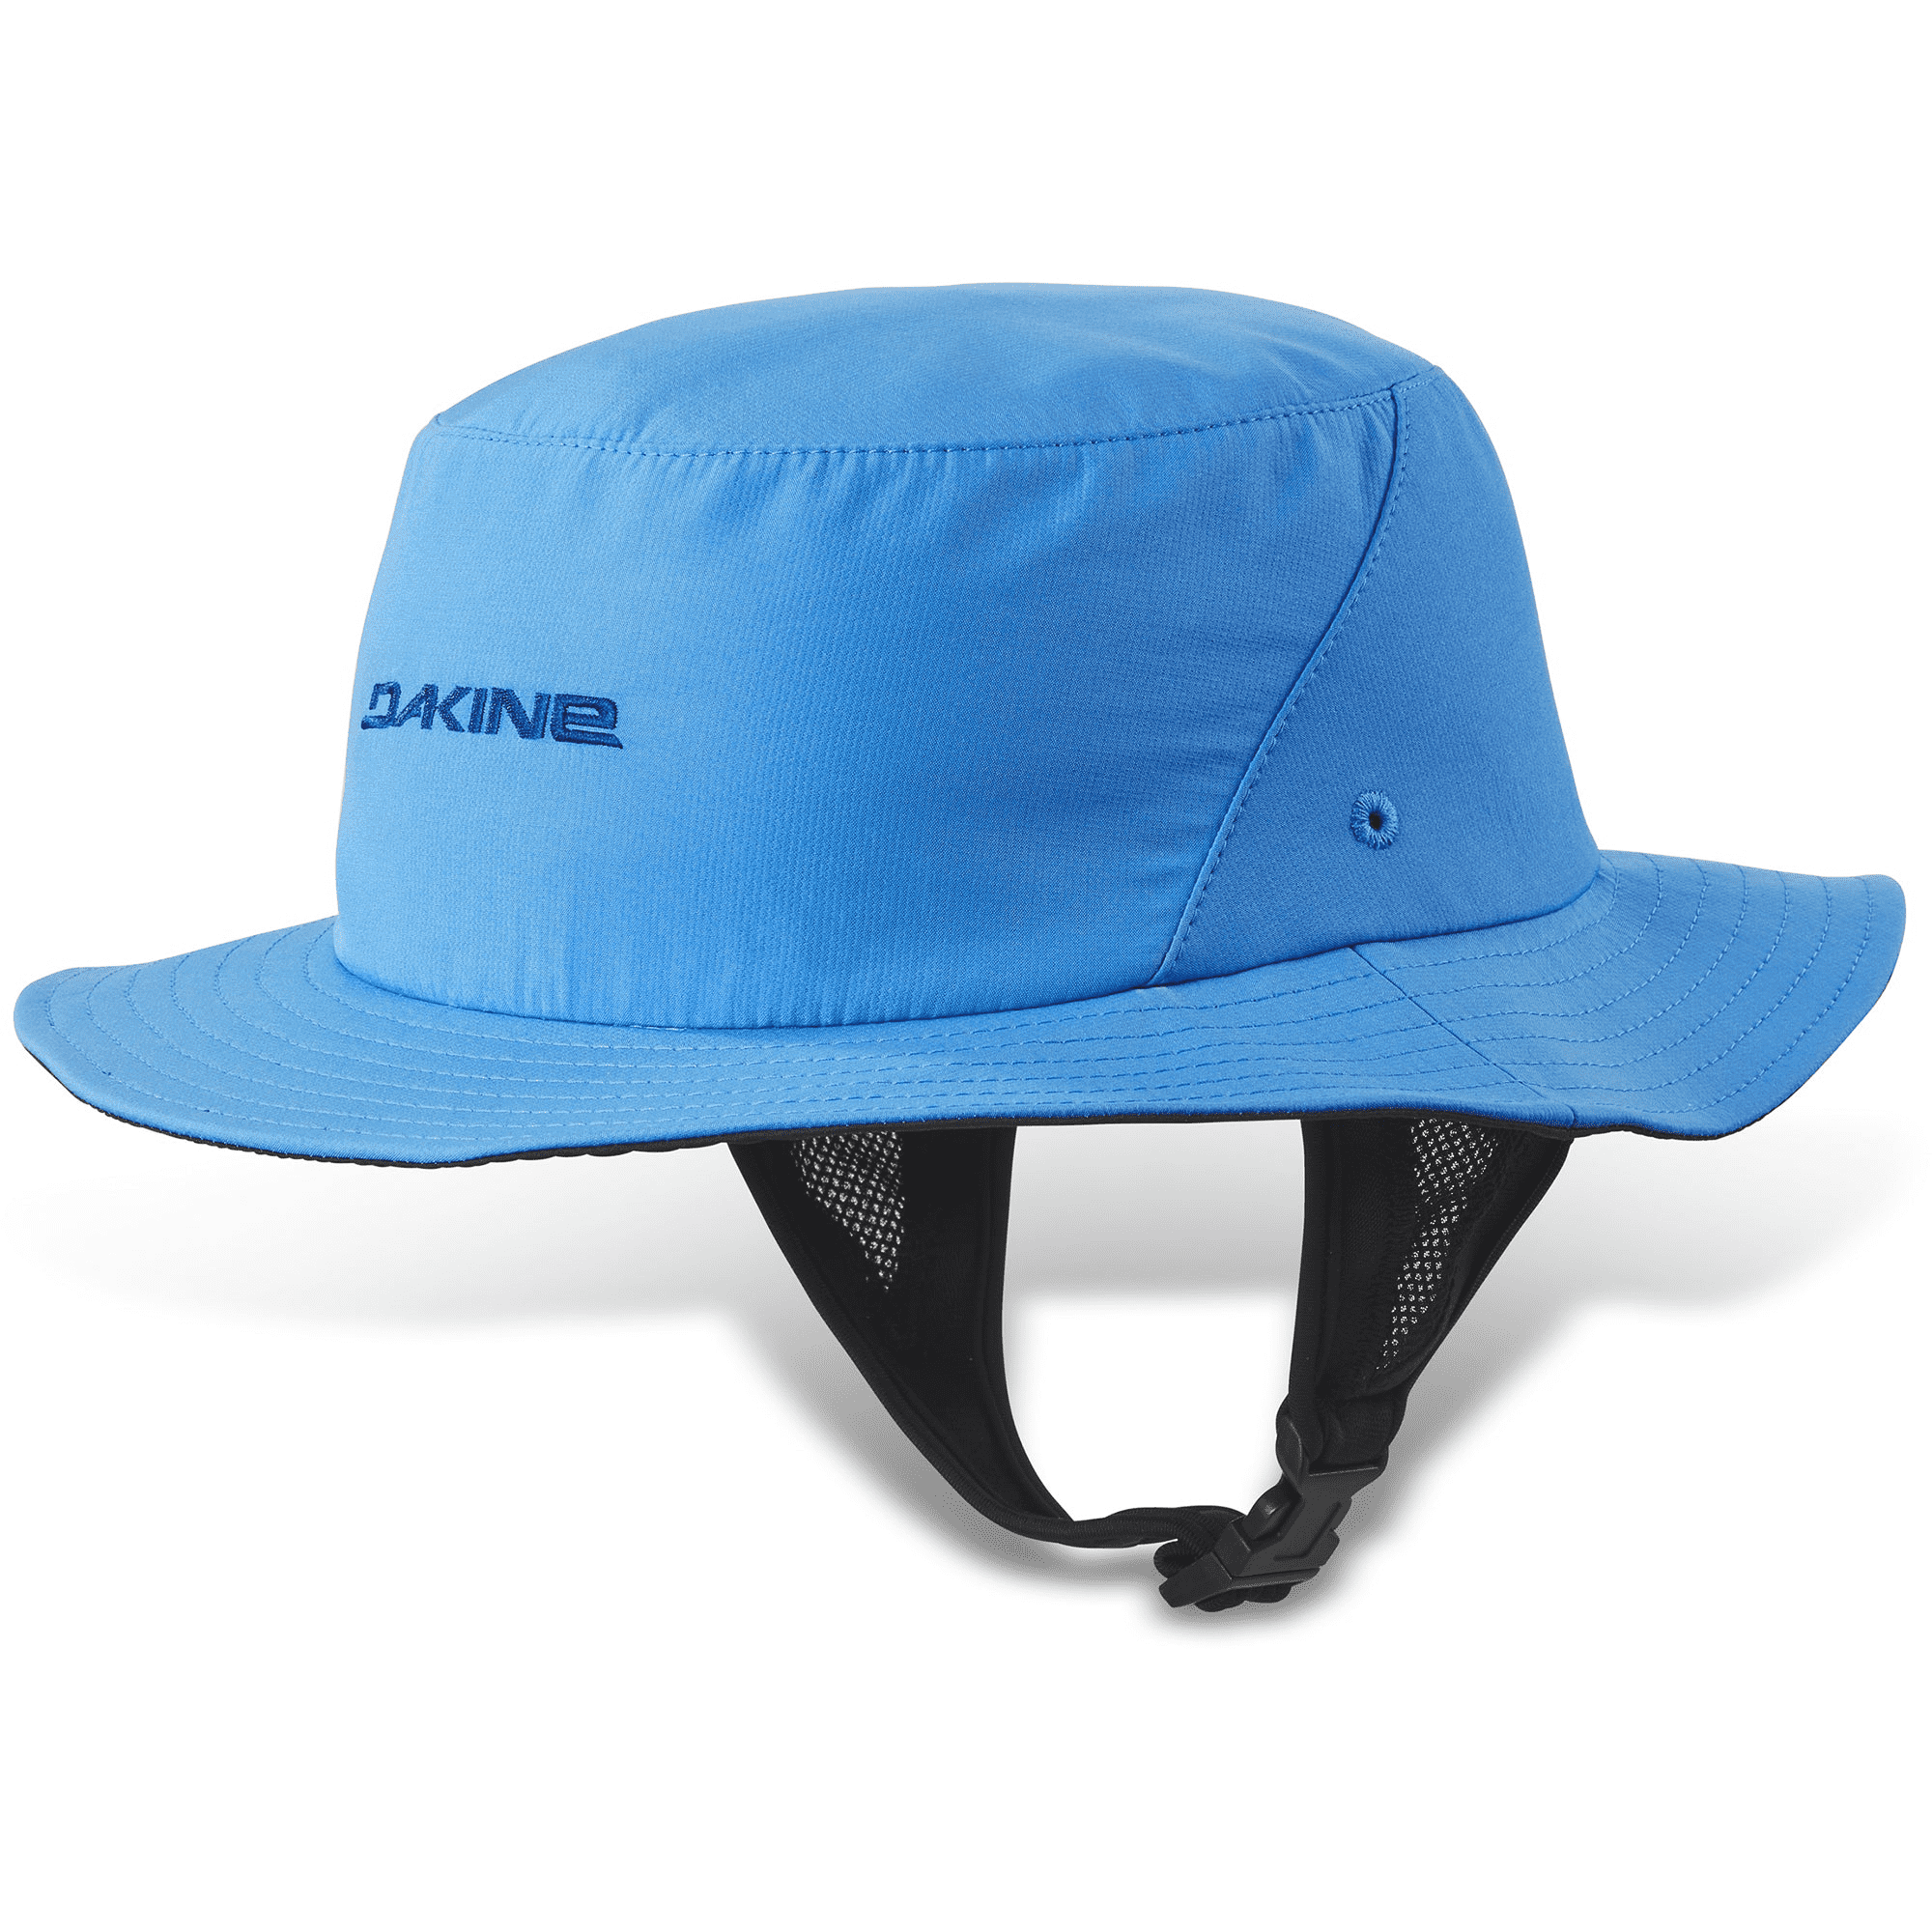 INDO SURF HAT DAKINE (deep blue)